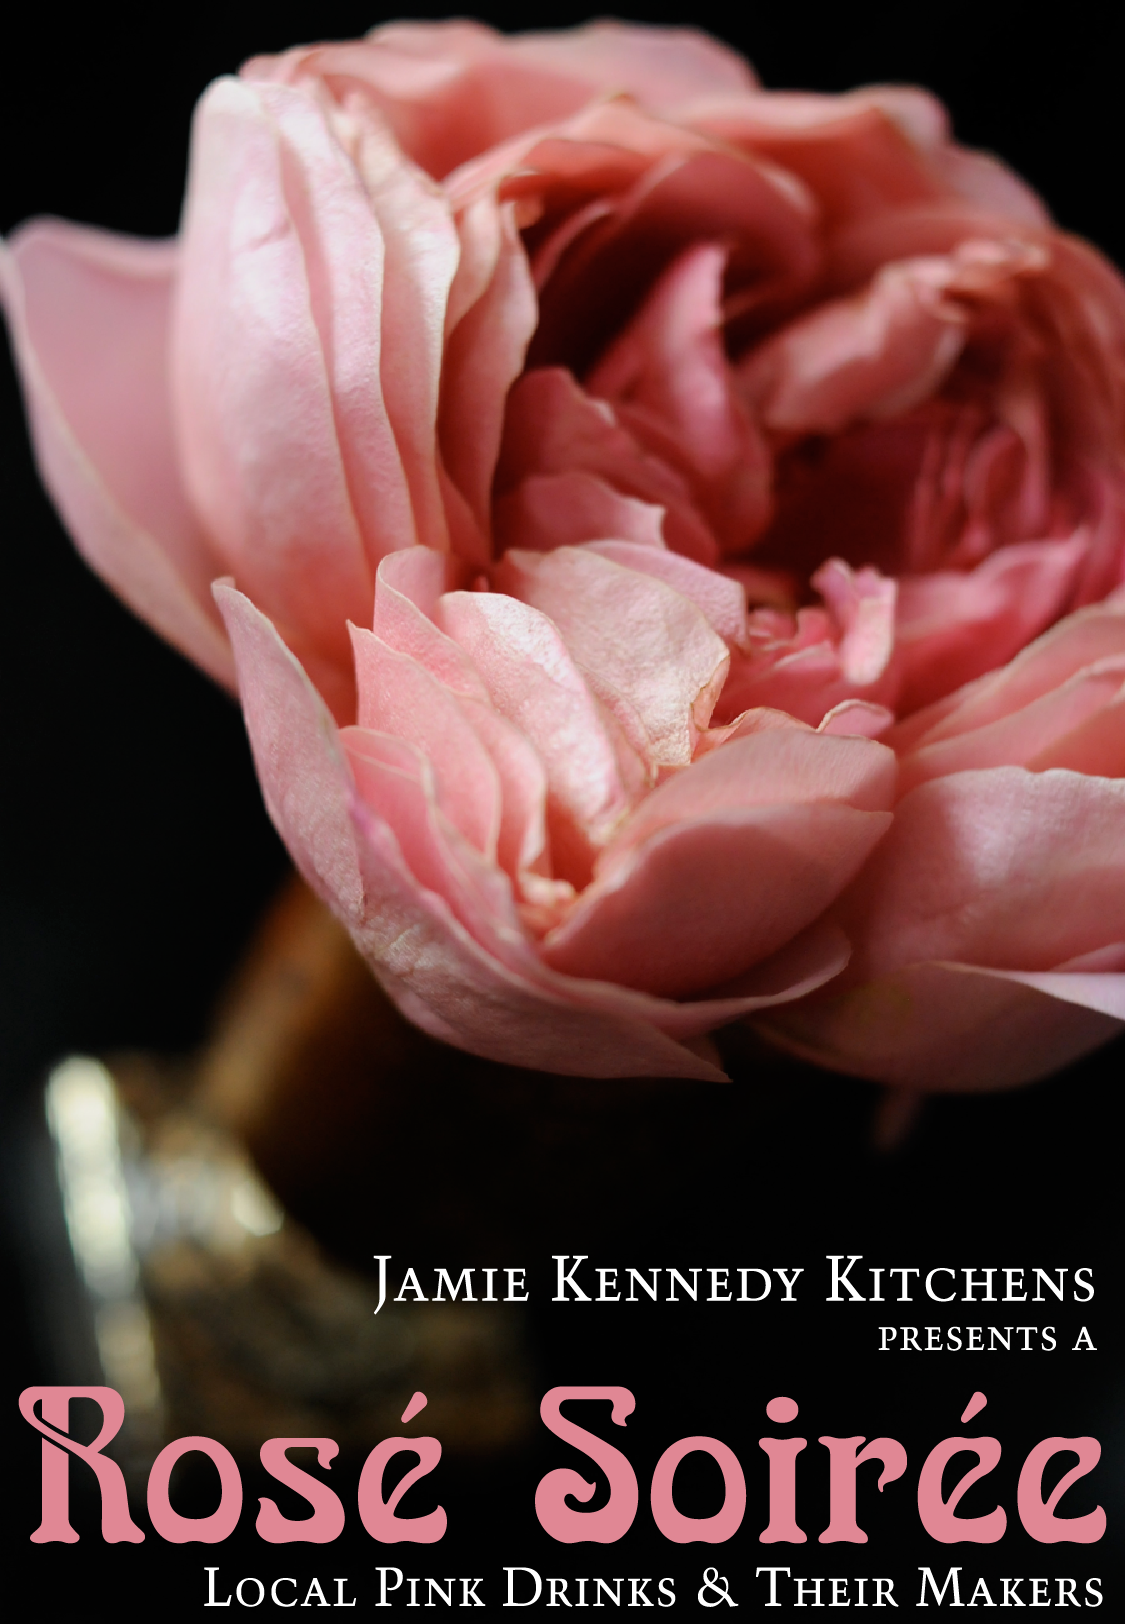 Jamie Kennedy’s Rosé Soirée